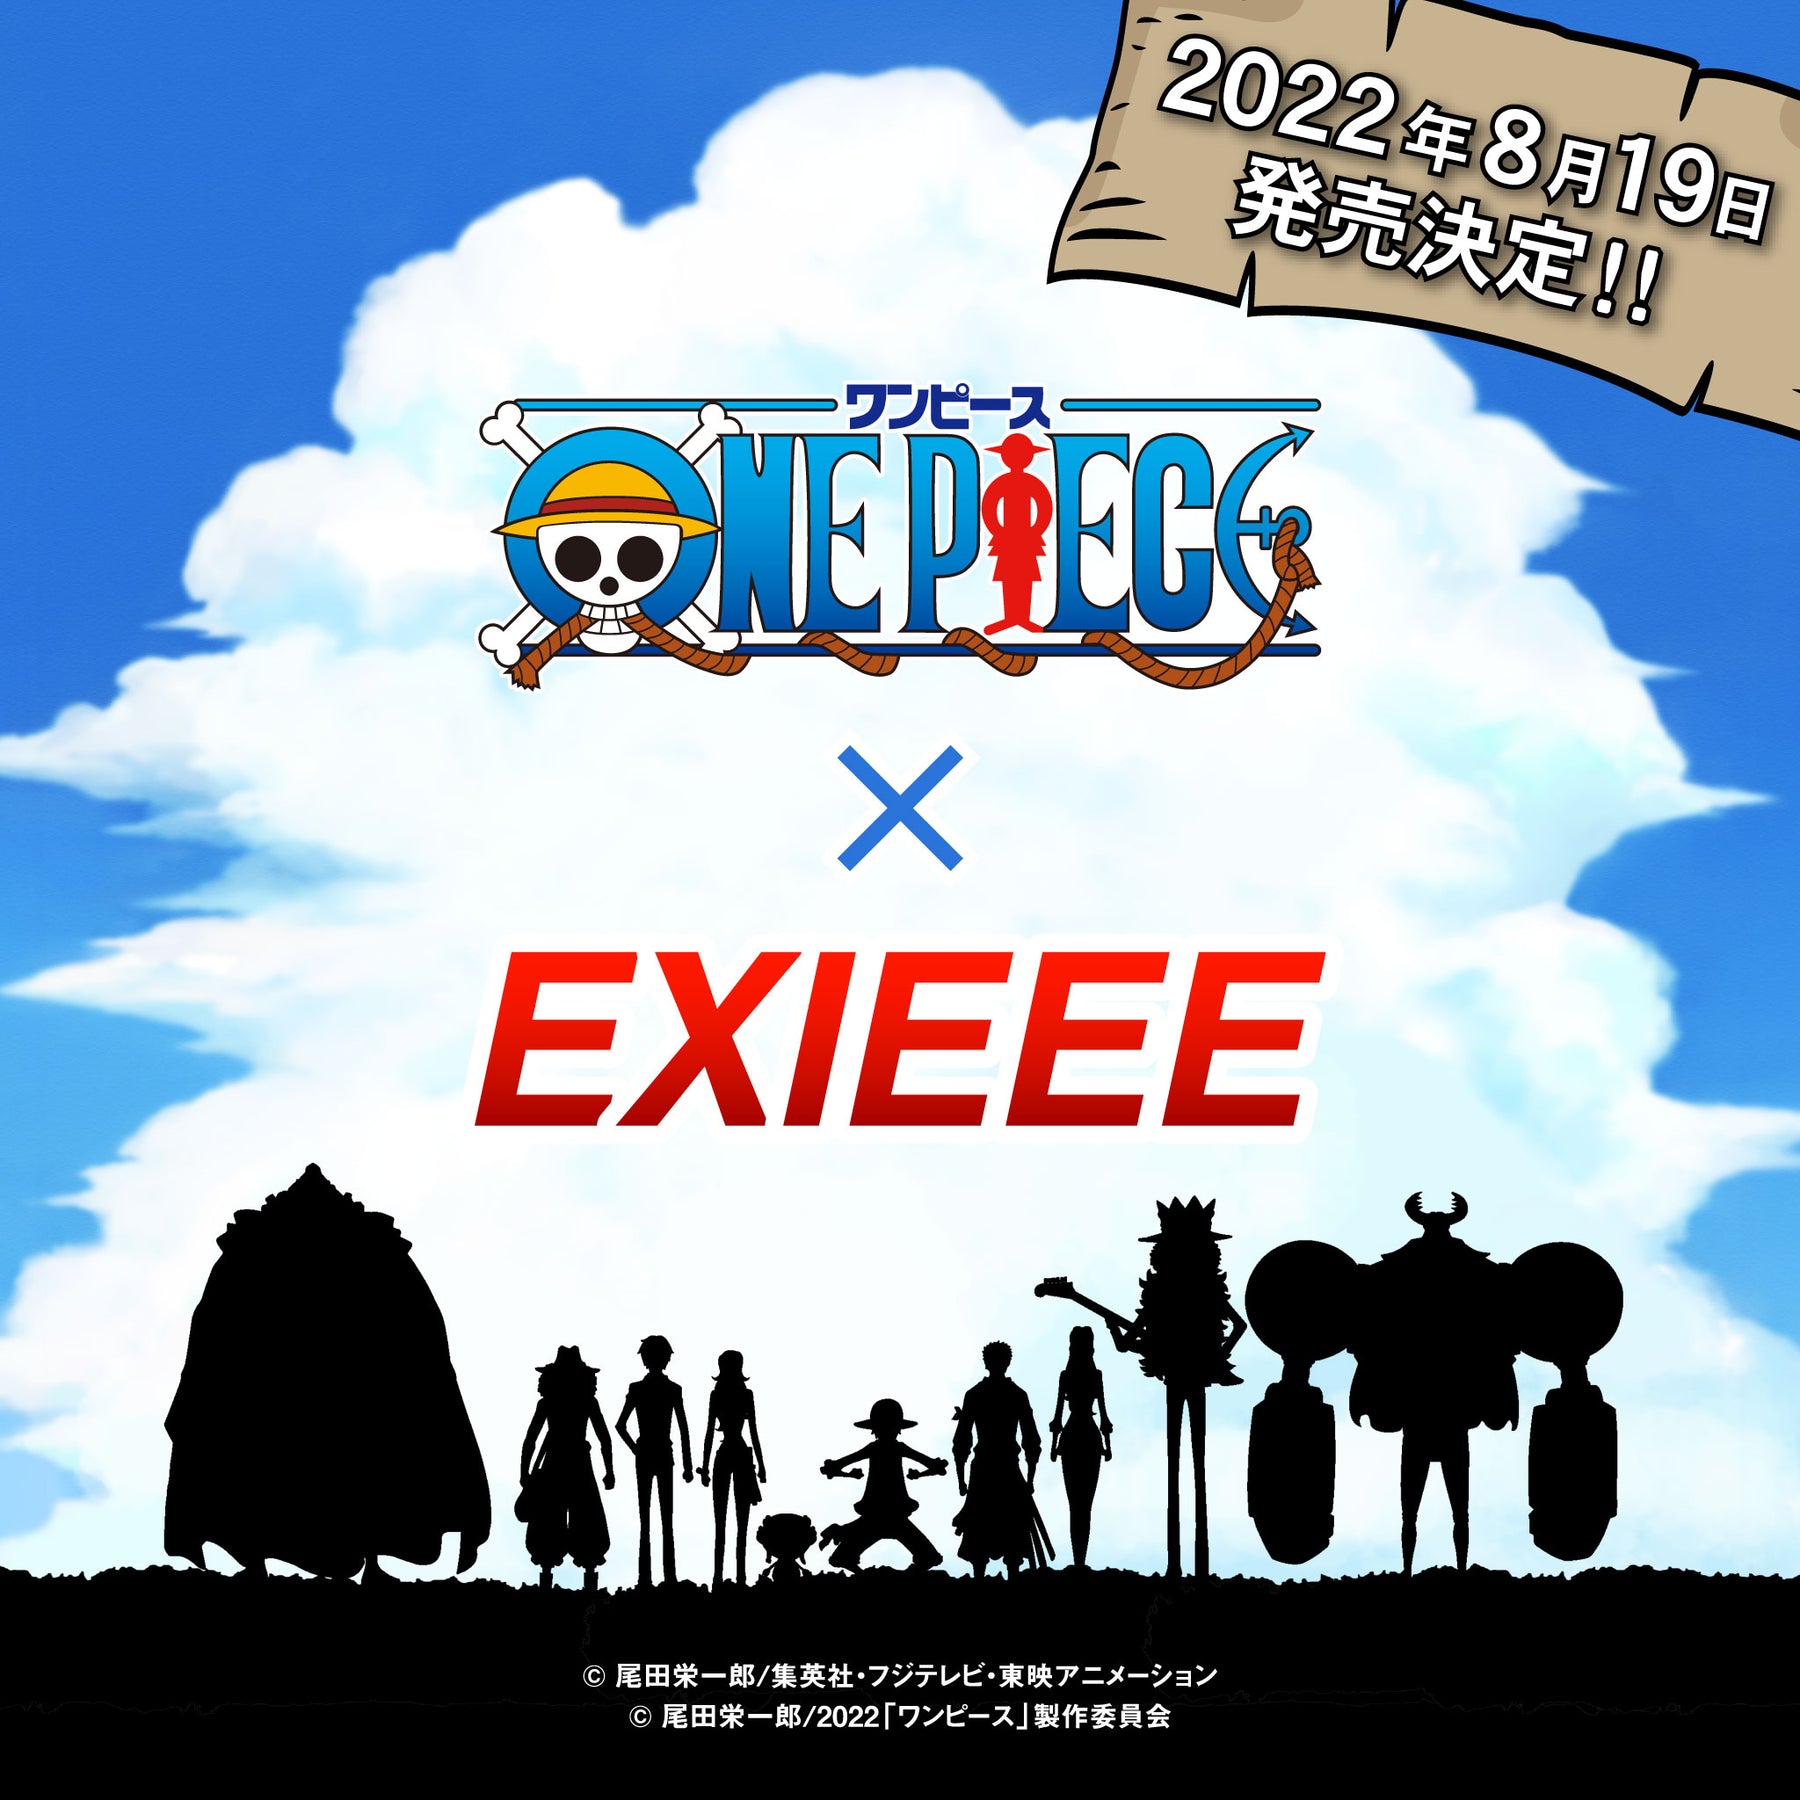 One Piece Exieeeコラボアイテム発売決定 ウィゴー公式サイト ウェブマガジン Wego Jp